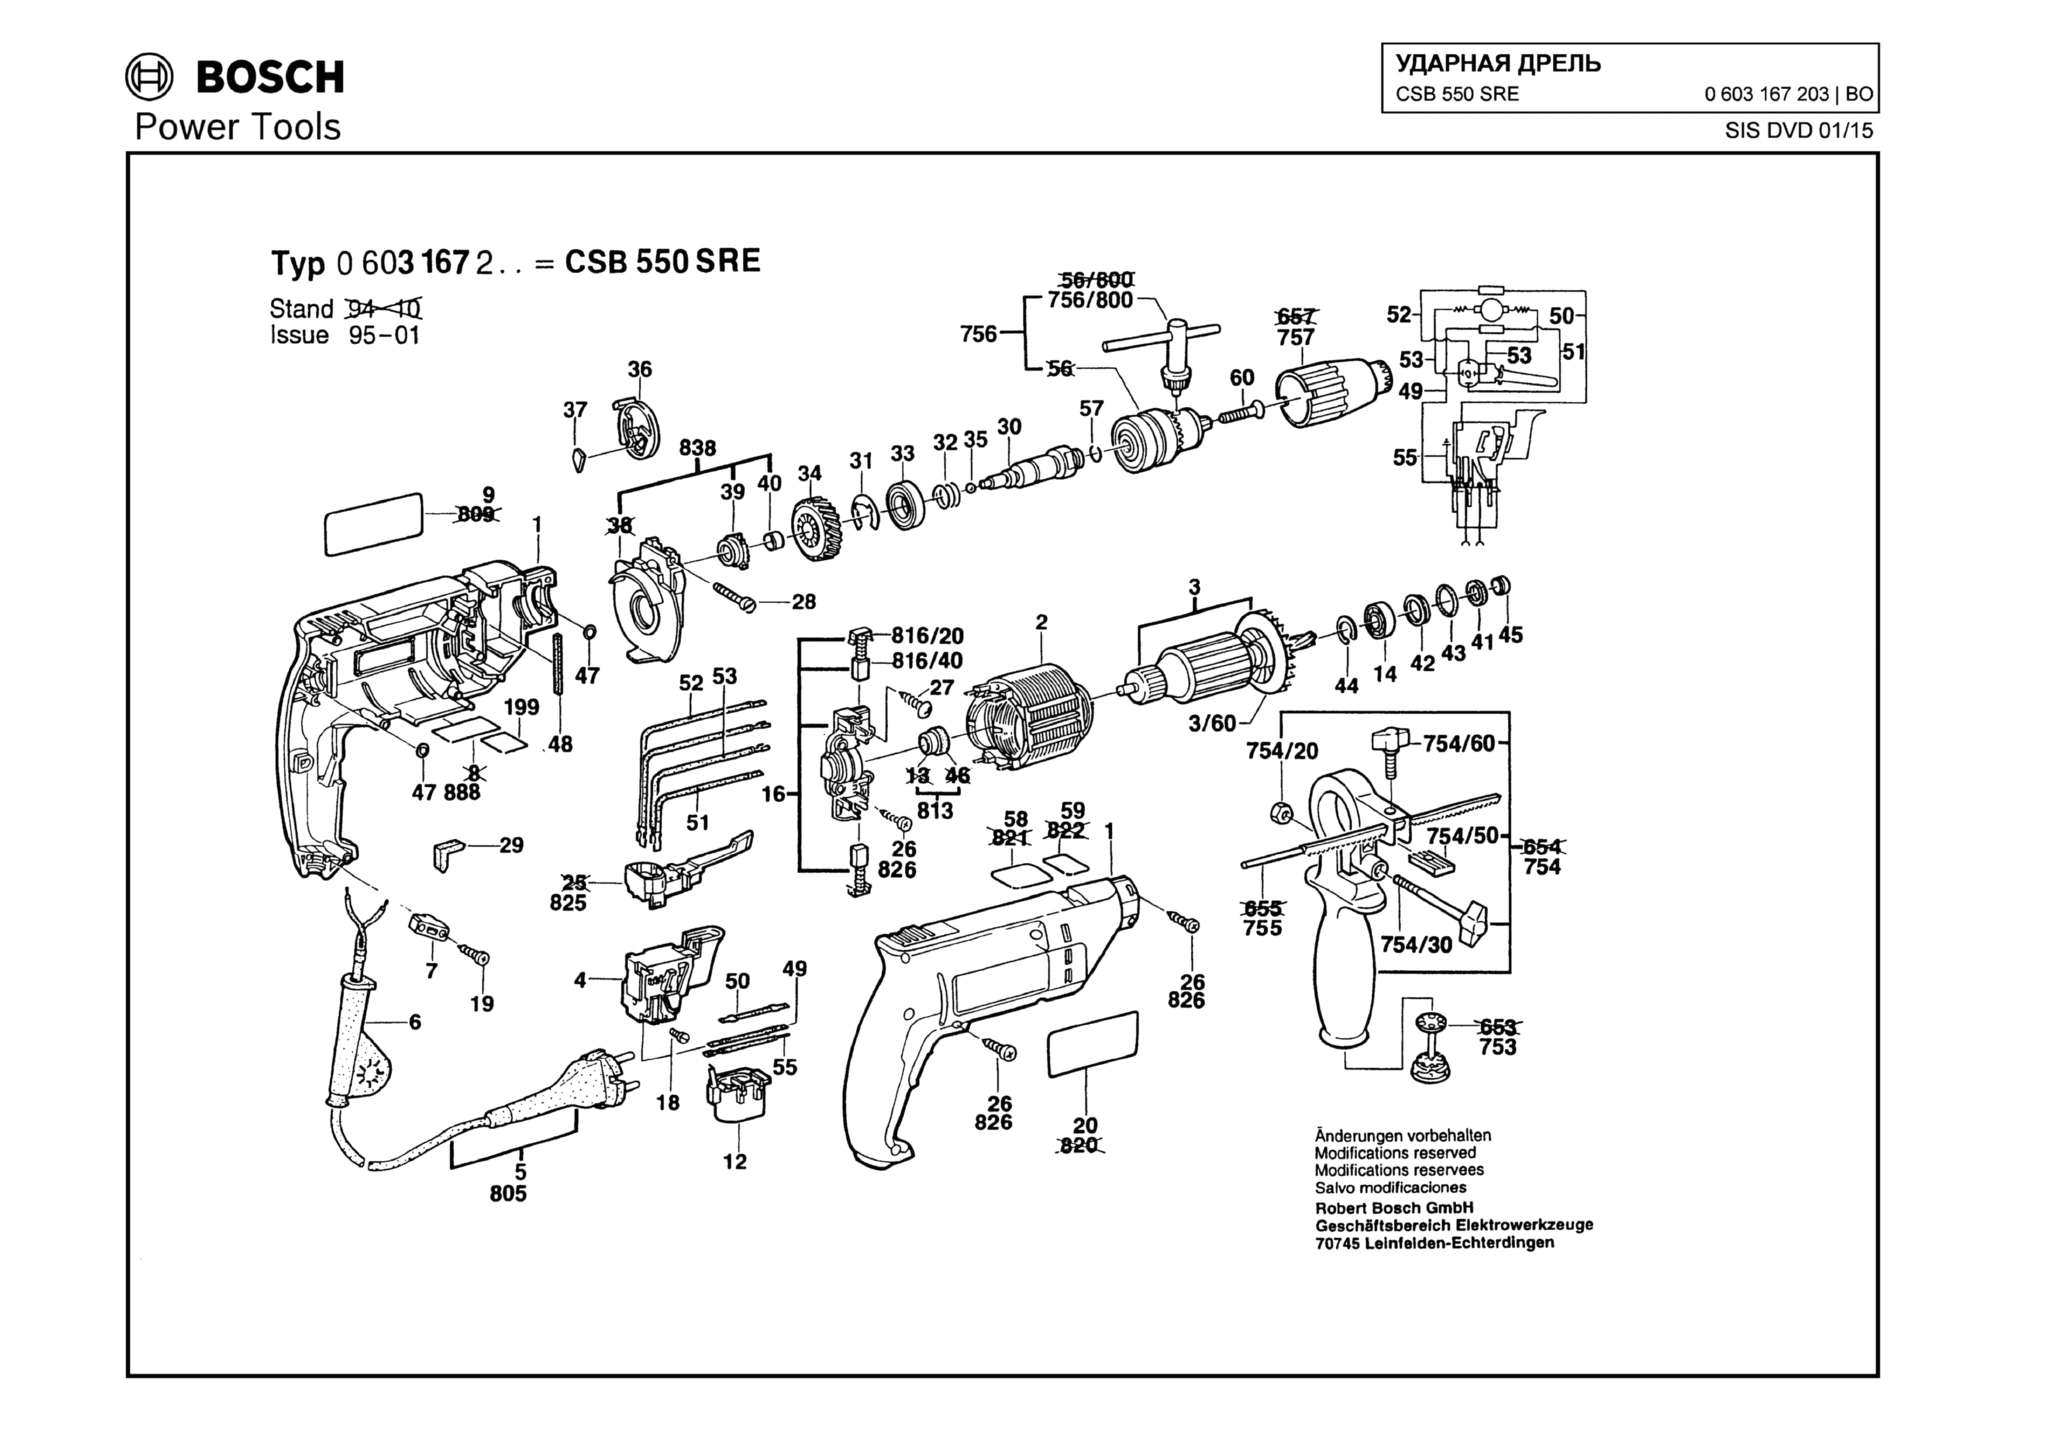 Запчасти, схема и деталировка Bosch CSB 550 SRE (ТИП 0603167203)